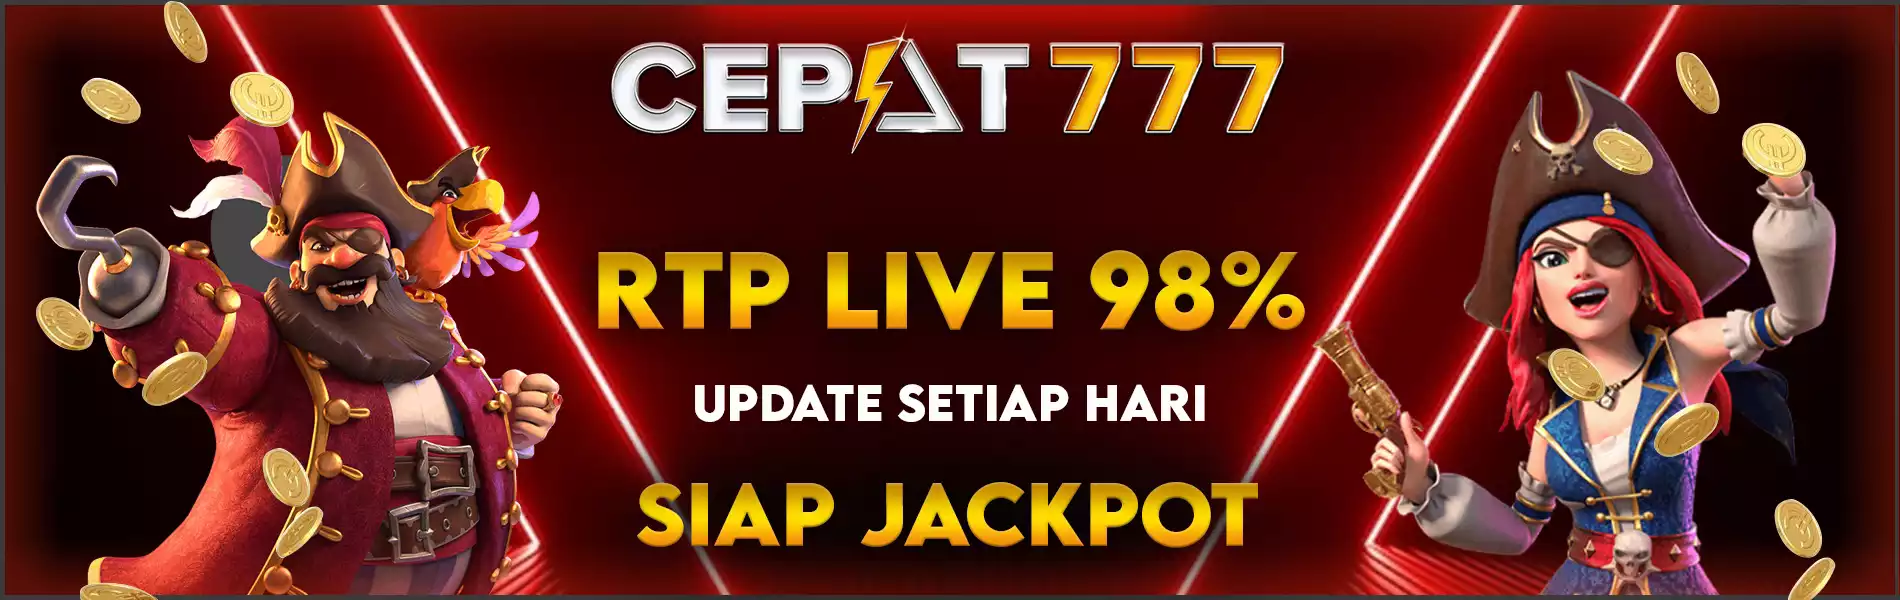 CEPAT777